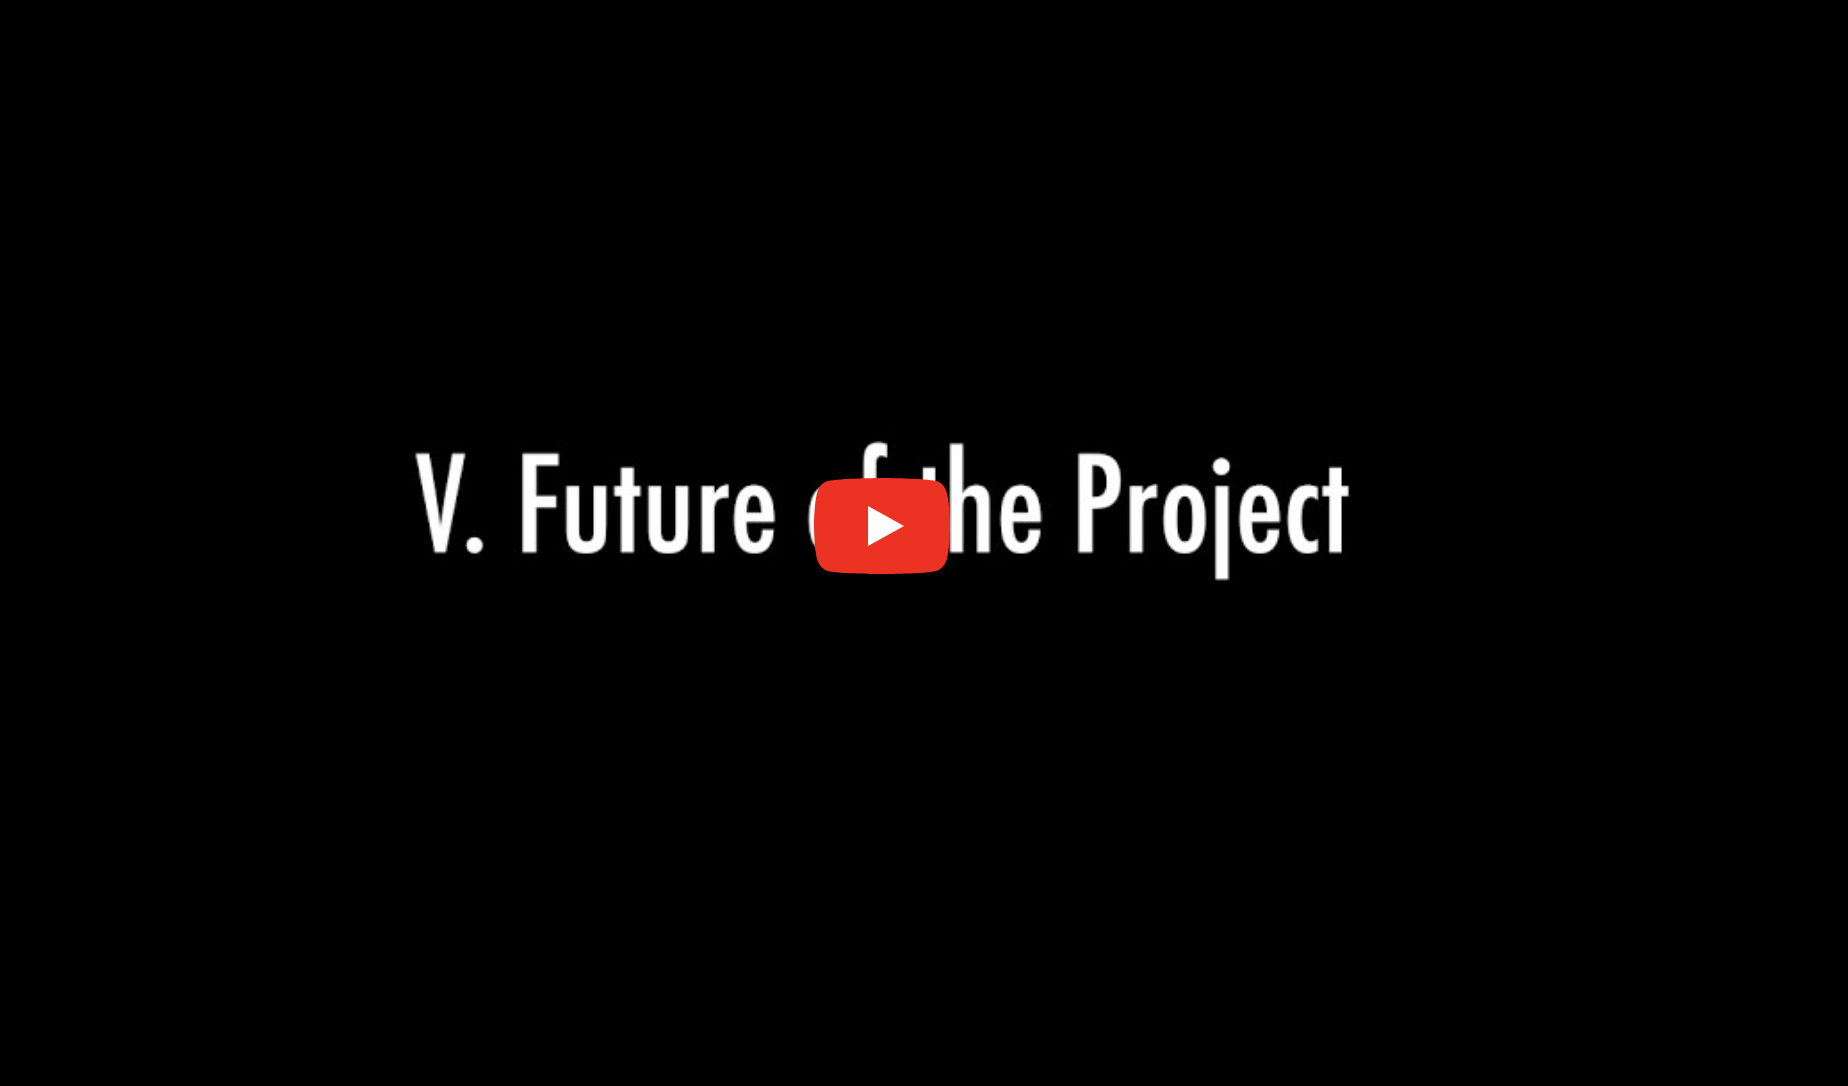 A. Future Video